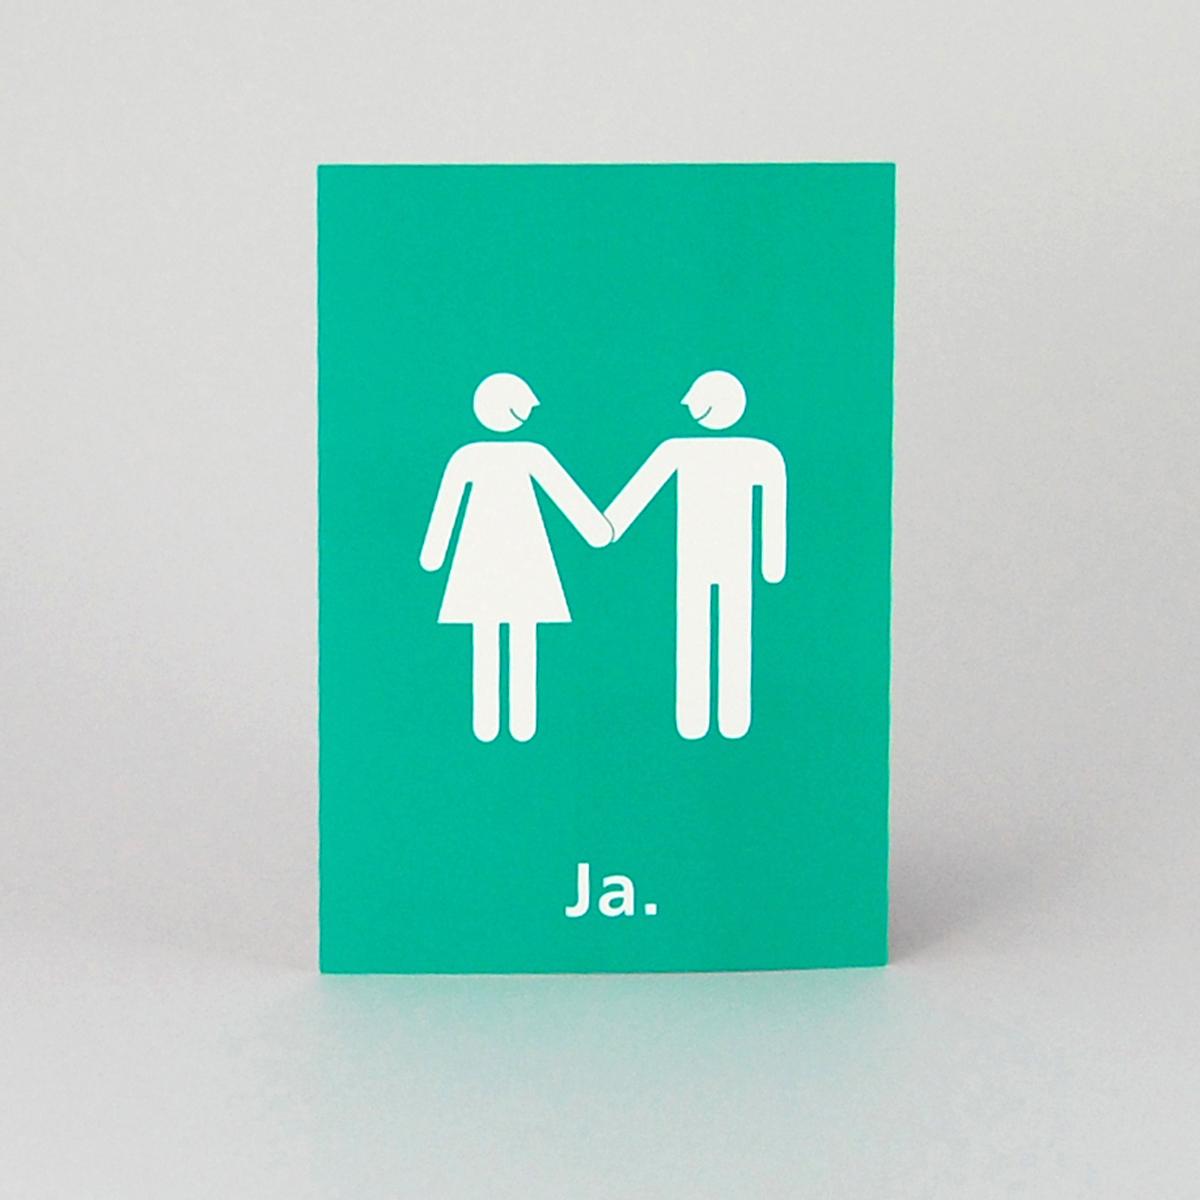 100 grüne Postkarten zur Hochzeit: Brautpaar + Ja.